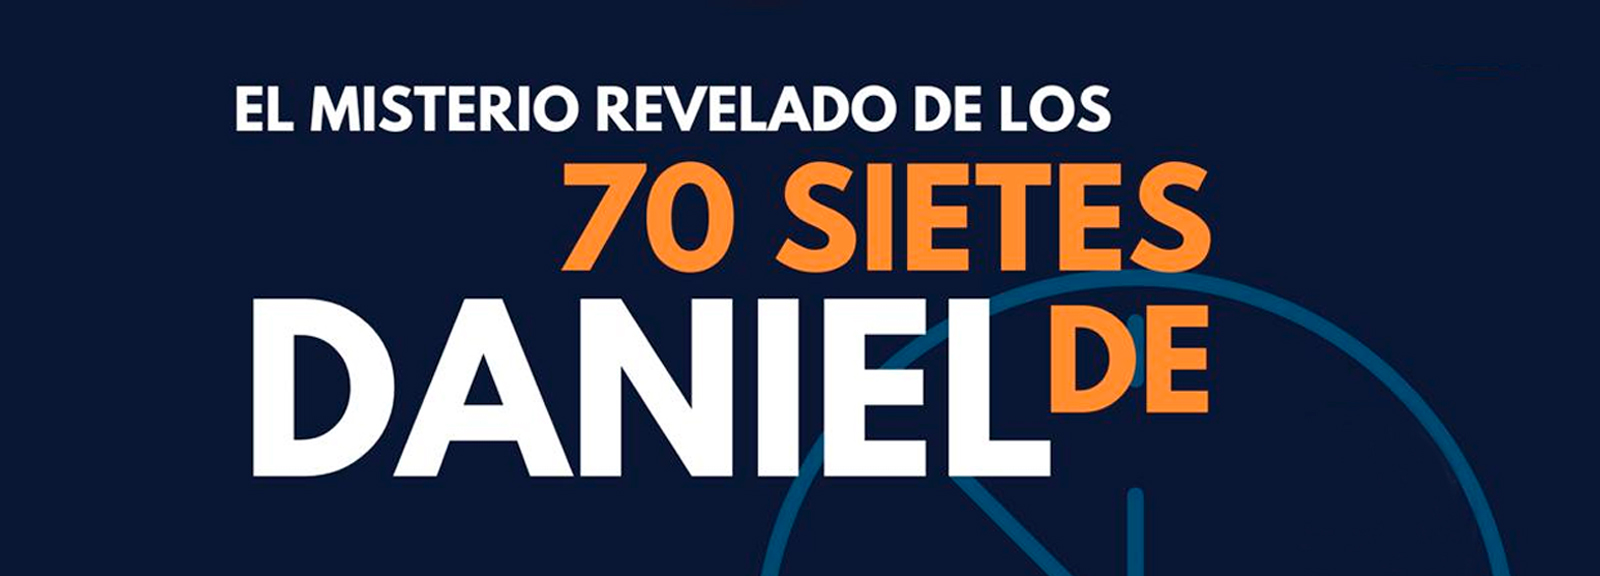 Seminario Online El Misterio Revelado de los 70 Sietes de Daniel